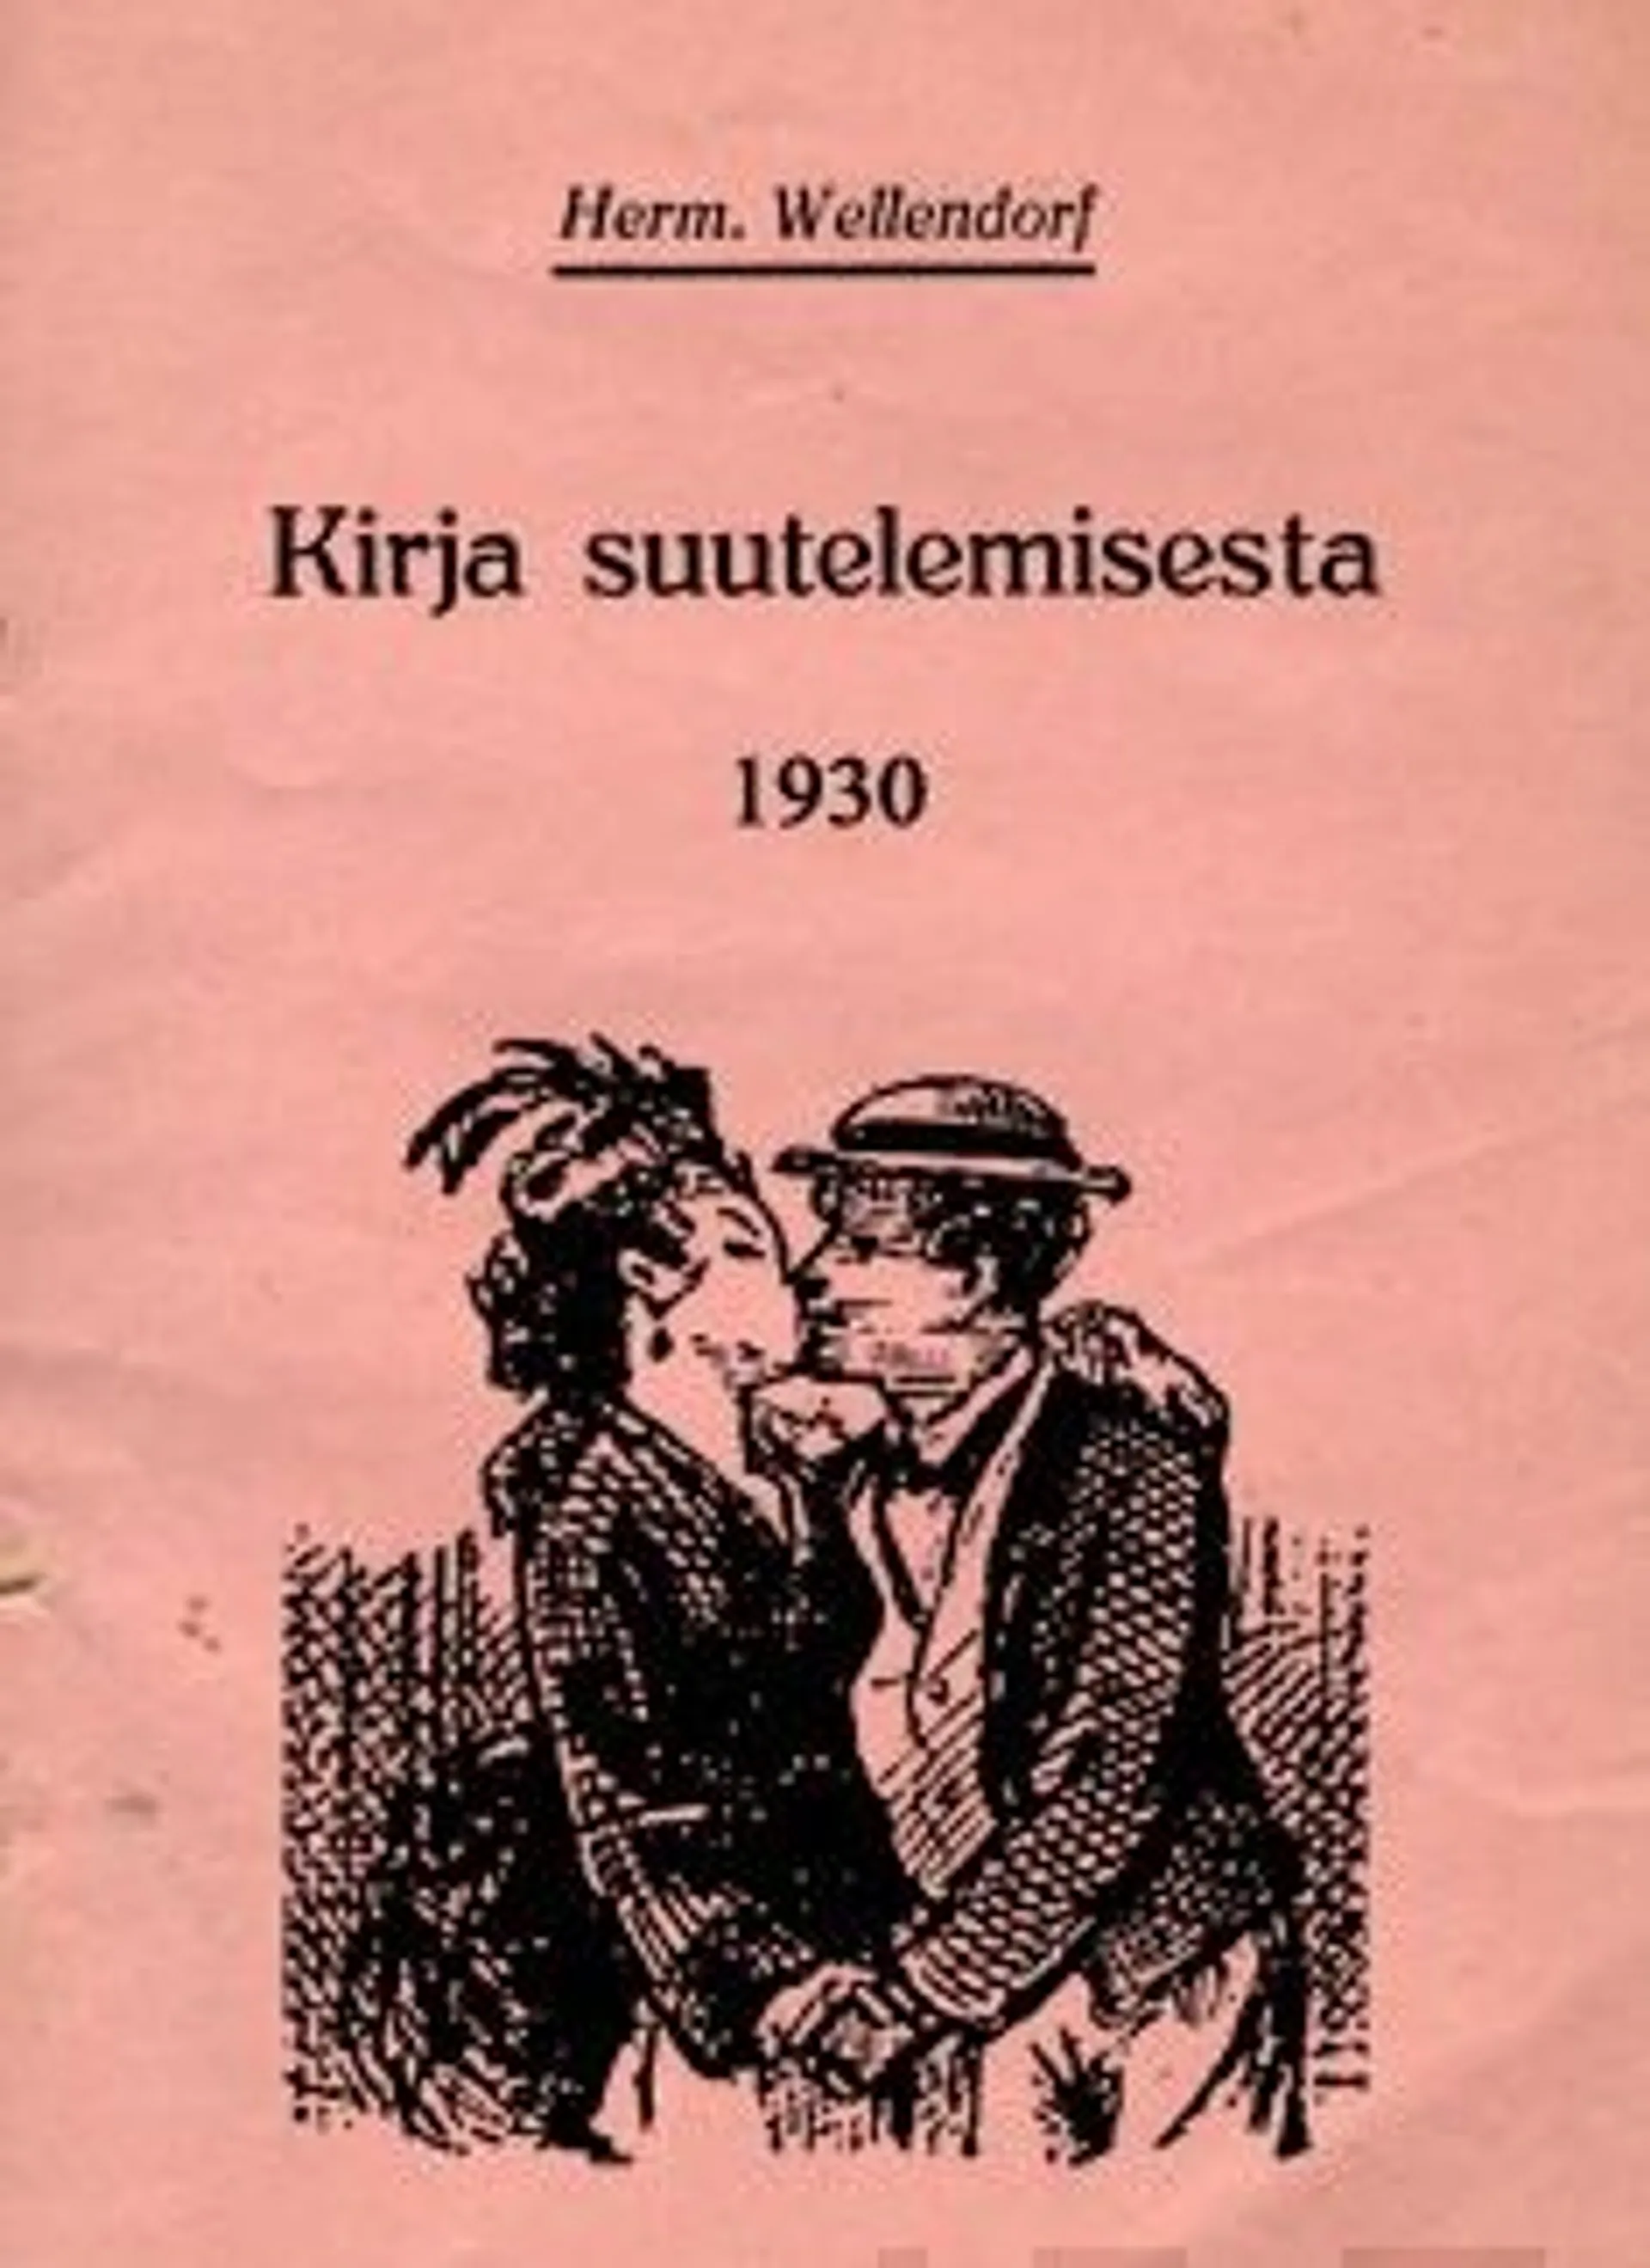 Wellendorf, Kirja suutelemisesta 1930 & Viettelemisen taito